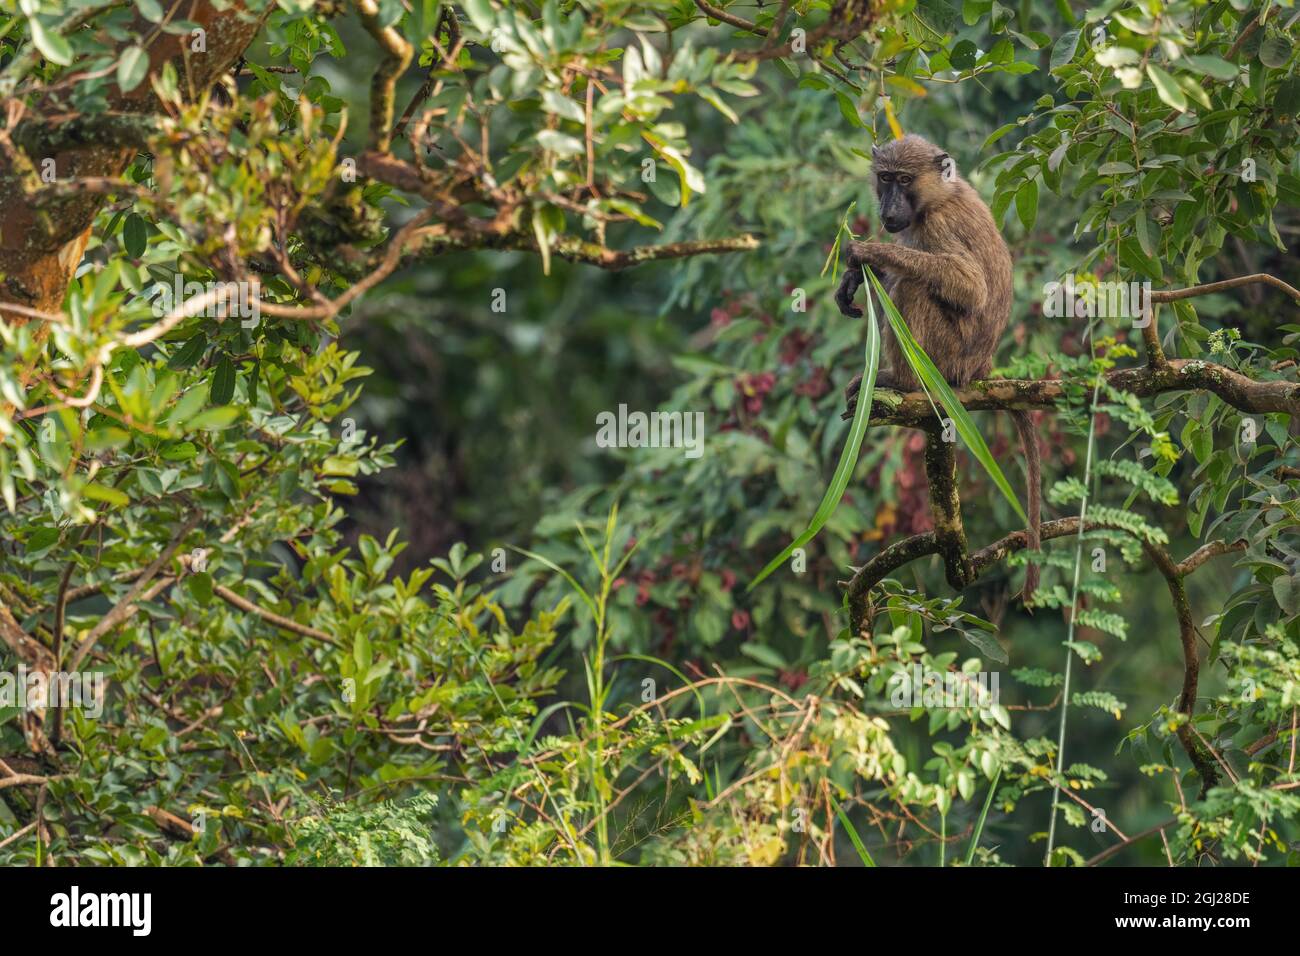 Olive Baboon - Papio anubis, großer Bodenprimat aus afrikanischen Büschen und Wäldern, Bale Mountains, Budongo Forest, Uganda. Stockfoto